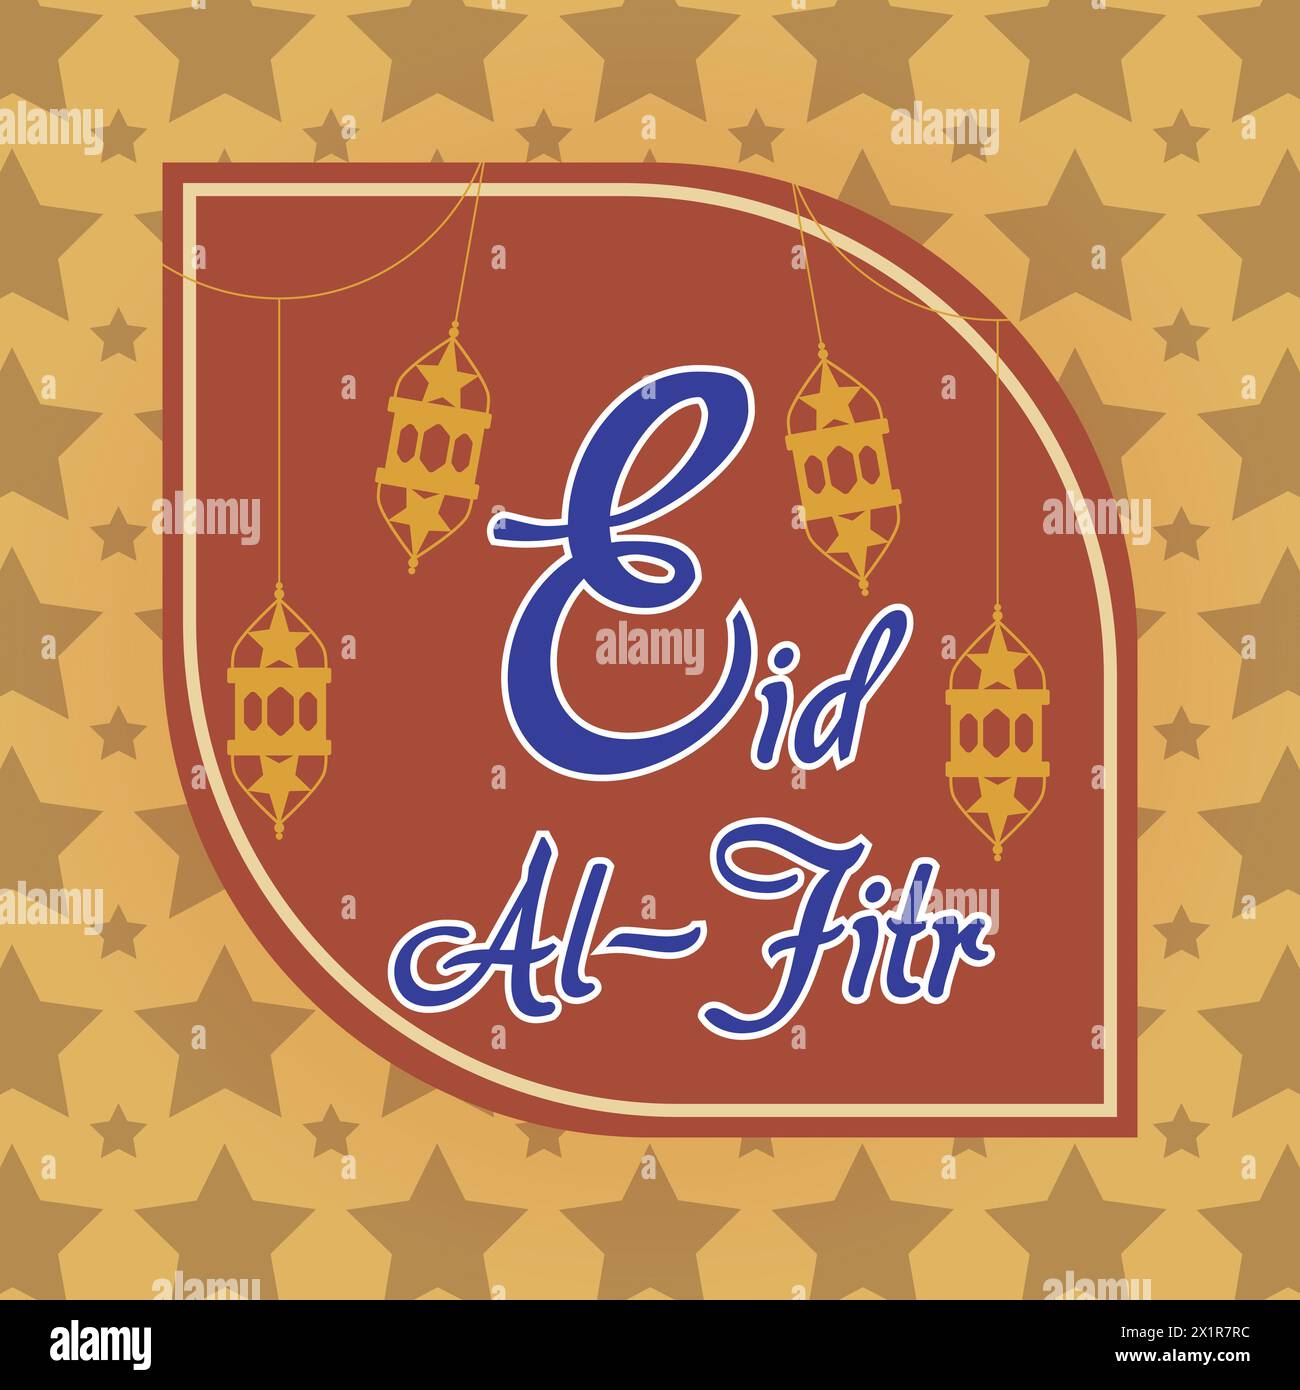 Festeggia la gioiosa occasione di Eid al-Fitr con questo elegante vettore! Una radiosa luna crescente e un'intricata lanterna adornano uno sfondo blu reale, fram Illustrazione Vettoriale